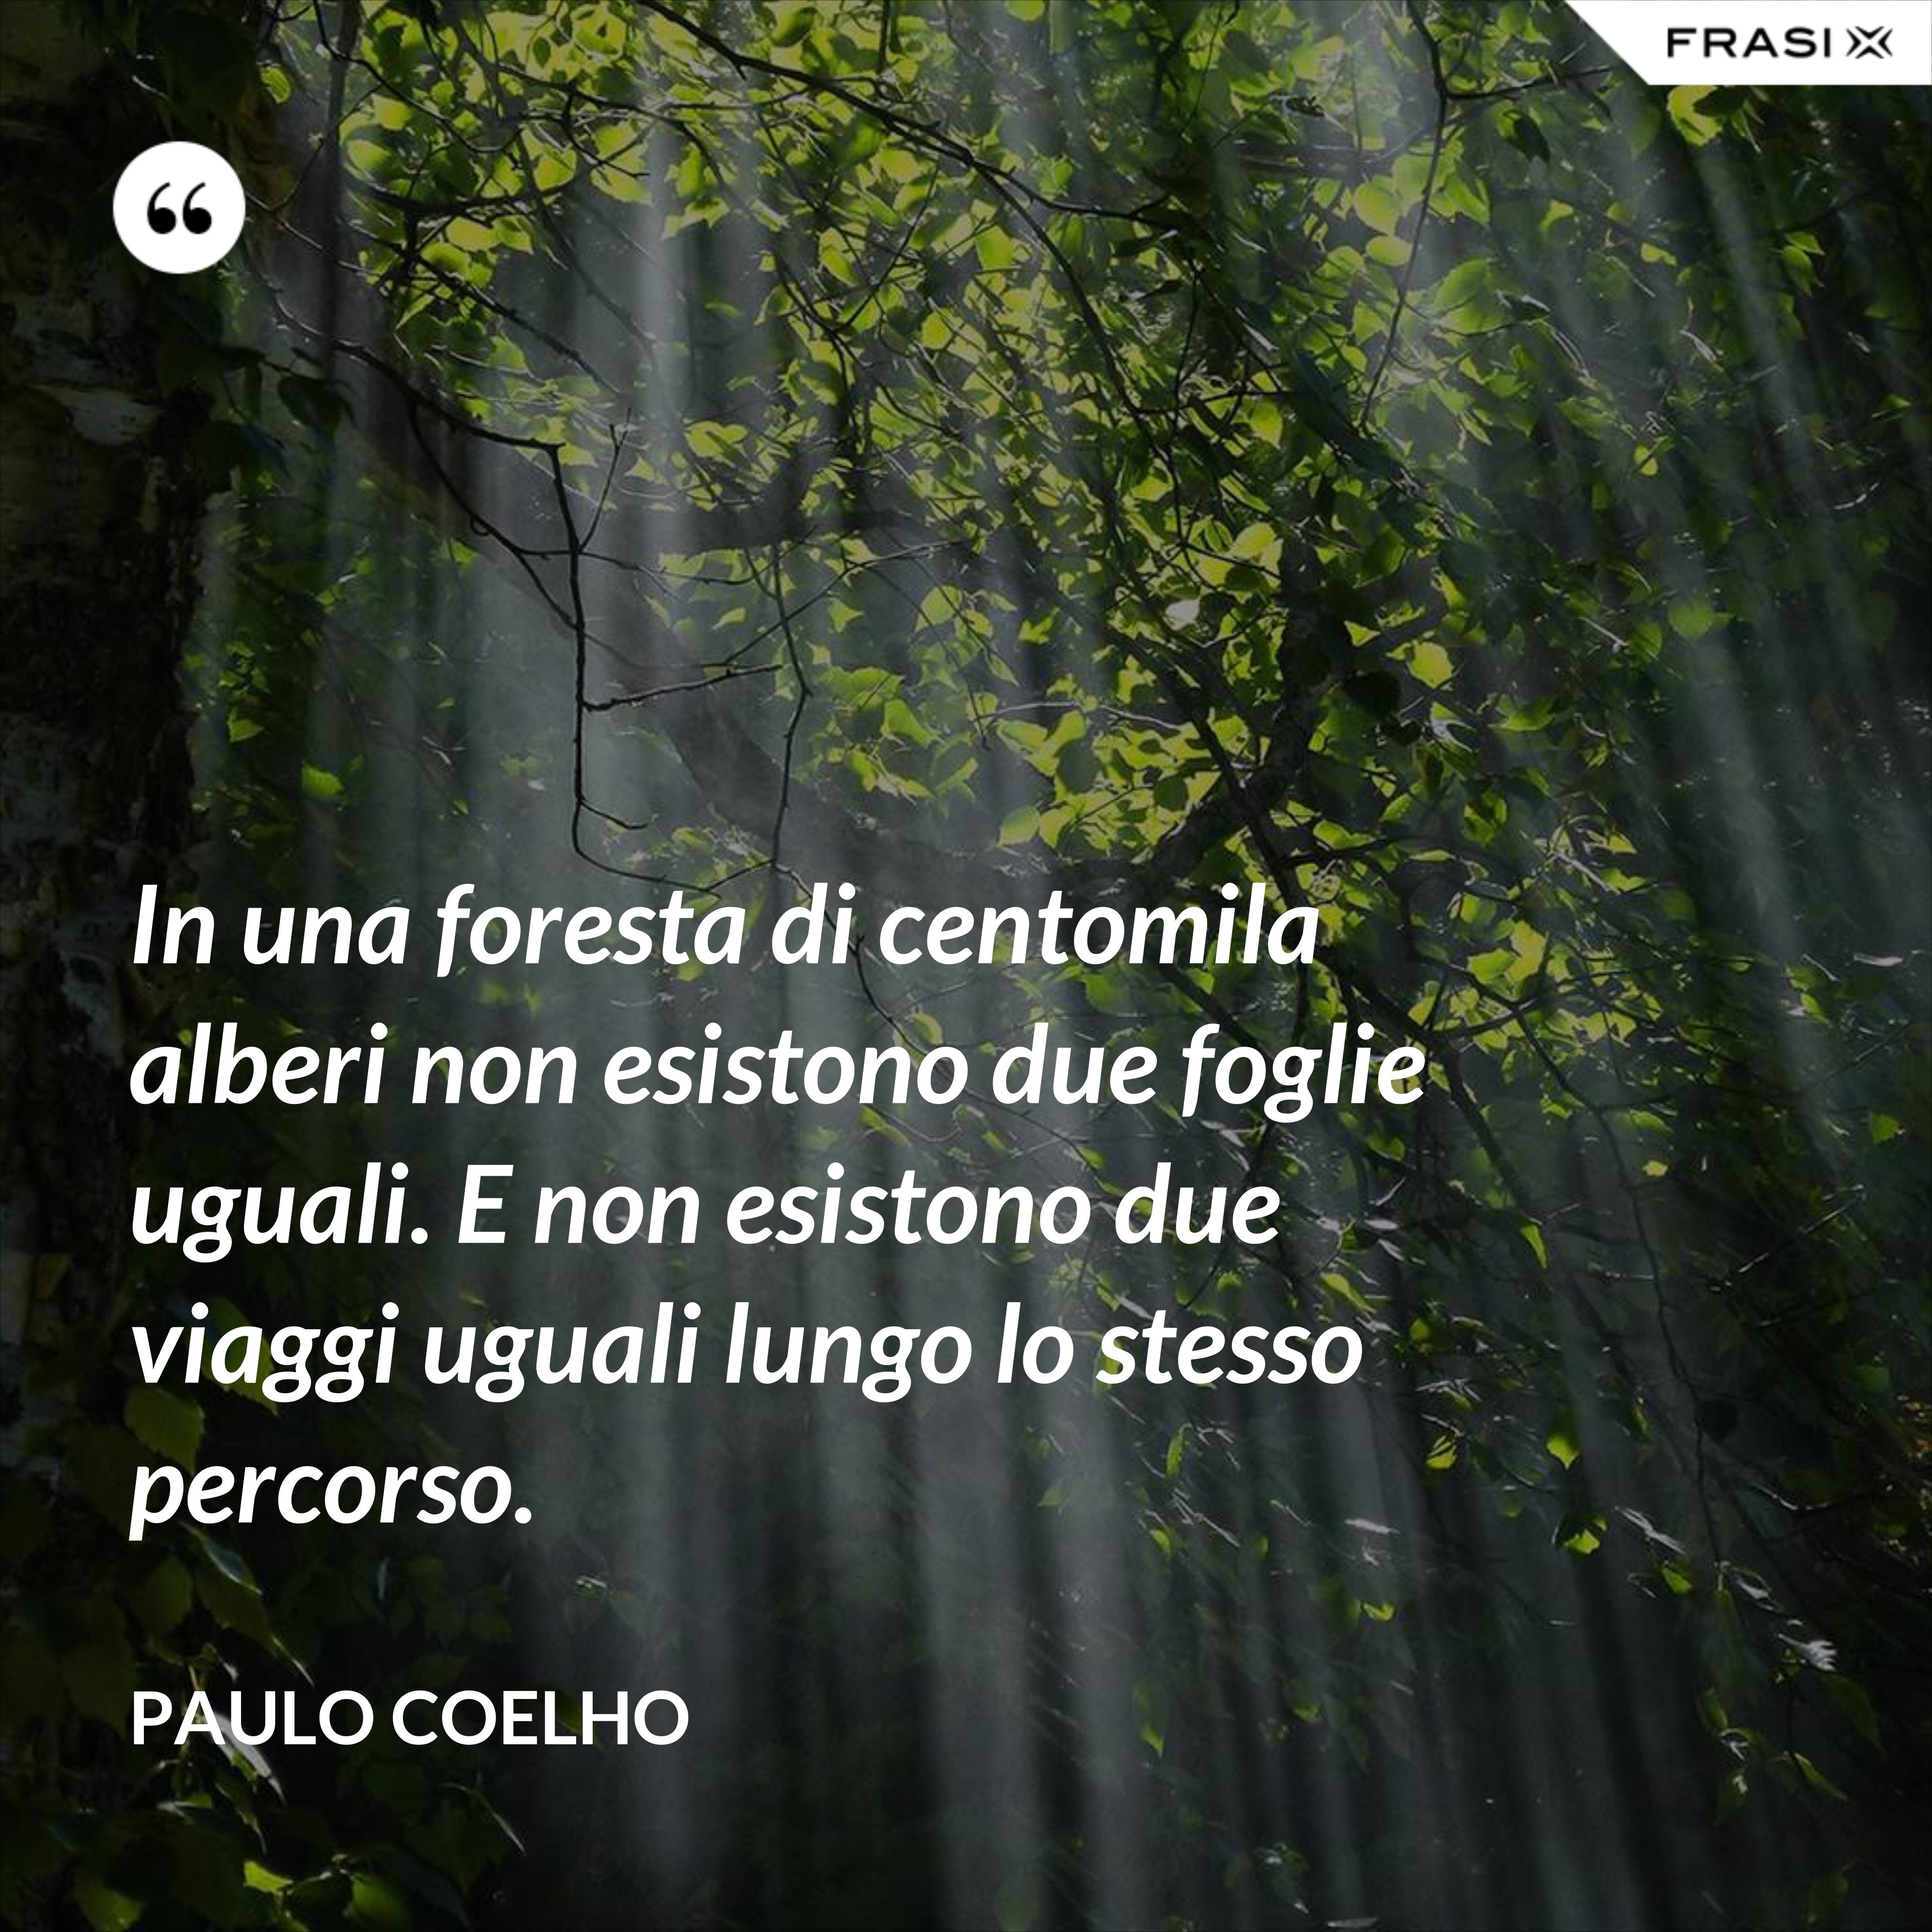 In una foresta di centomila alberi non esistono due foglie uguali. E non esistono due viaggi uguali lungo lo stesso percorso. - Paulo Coelho